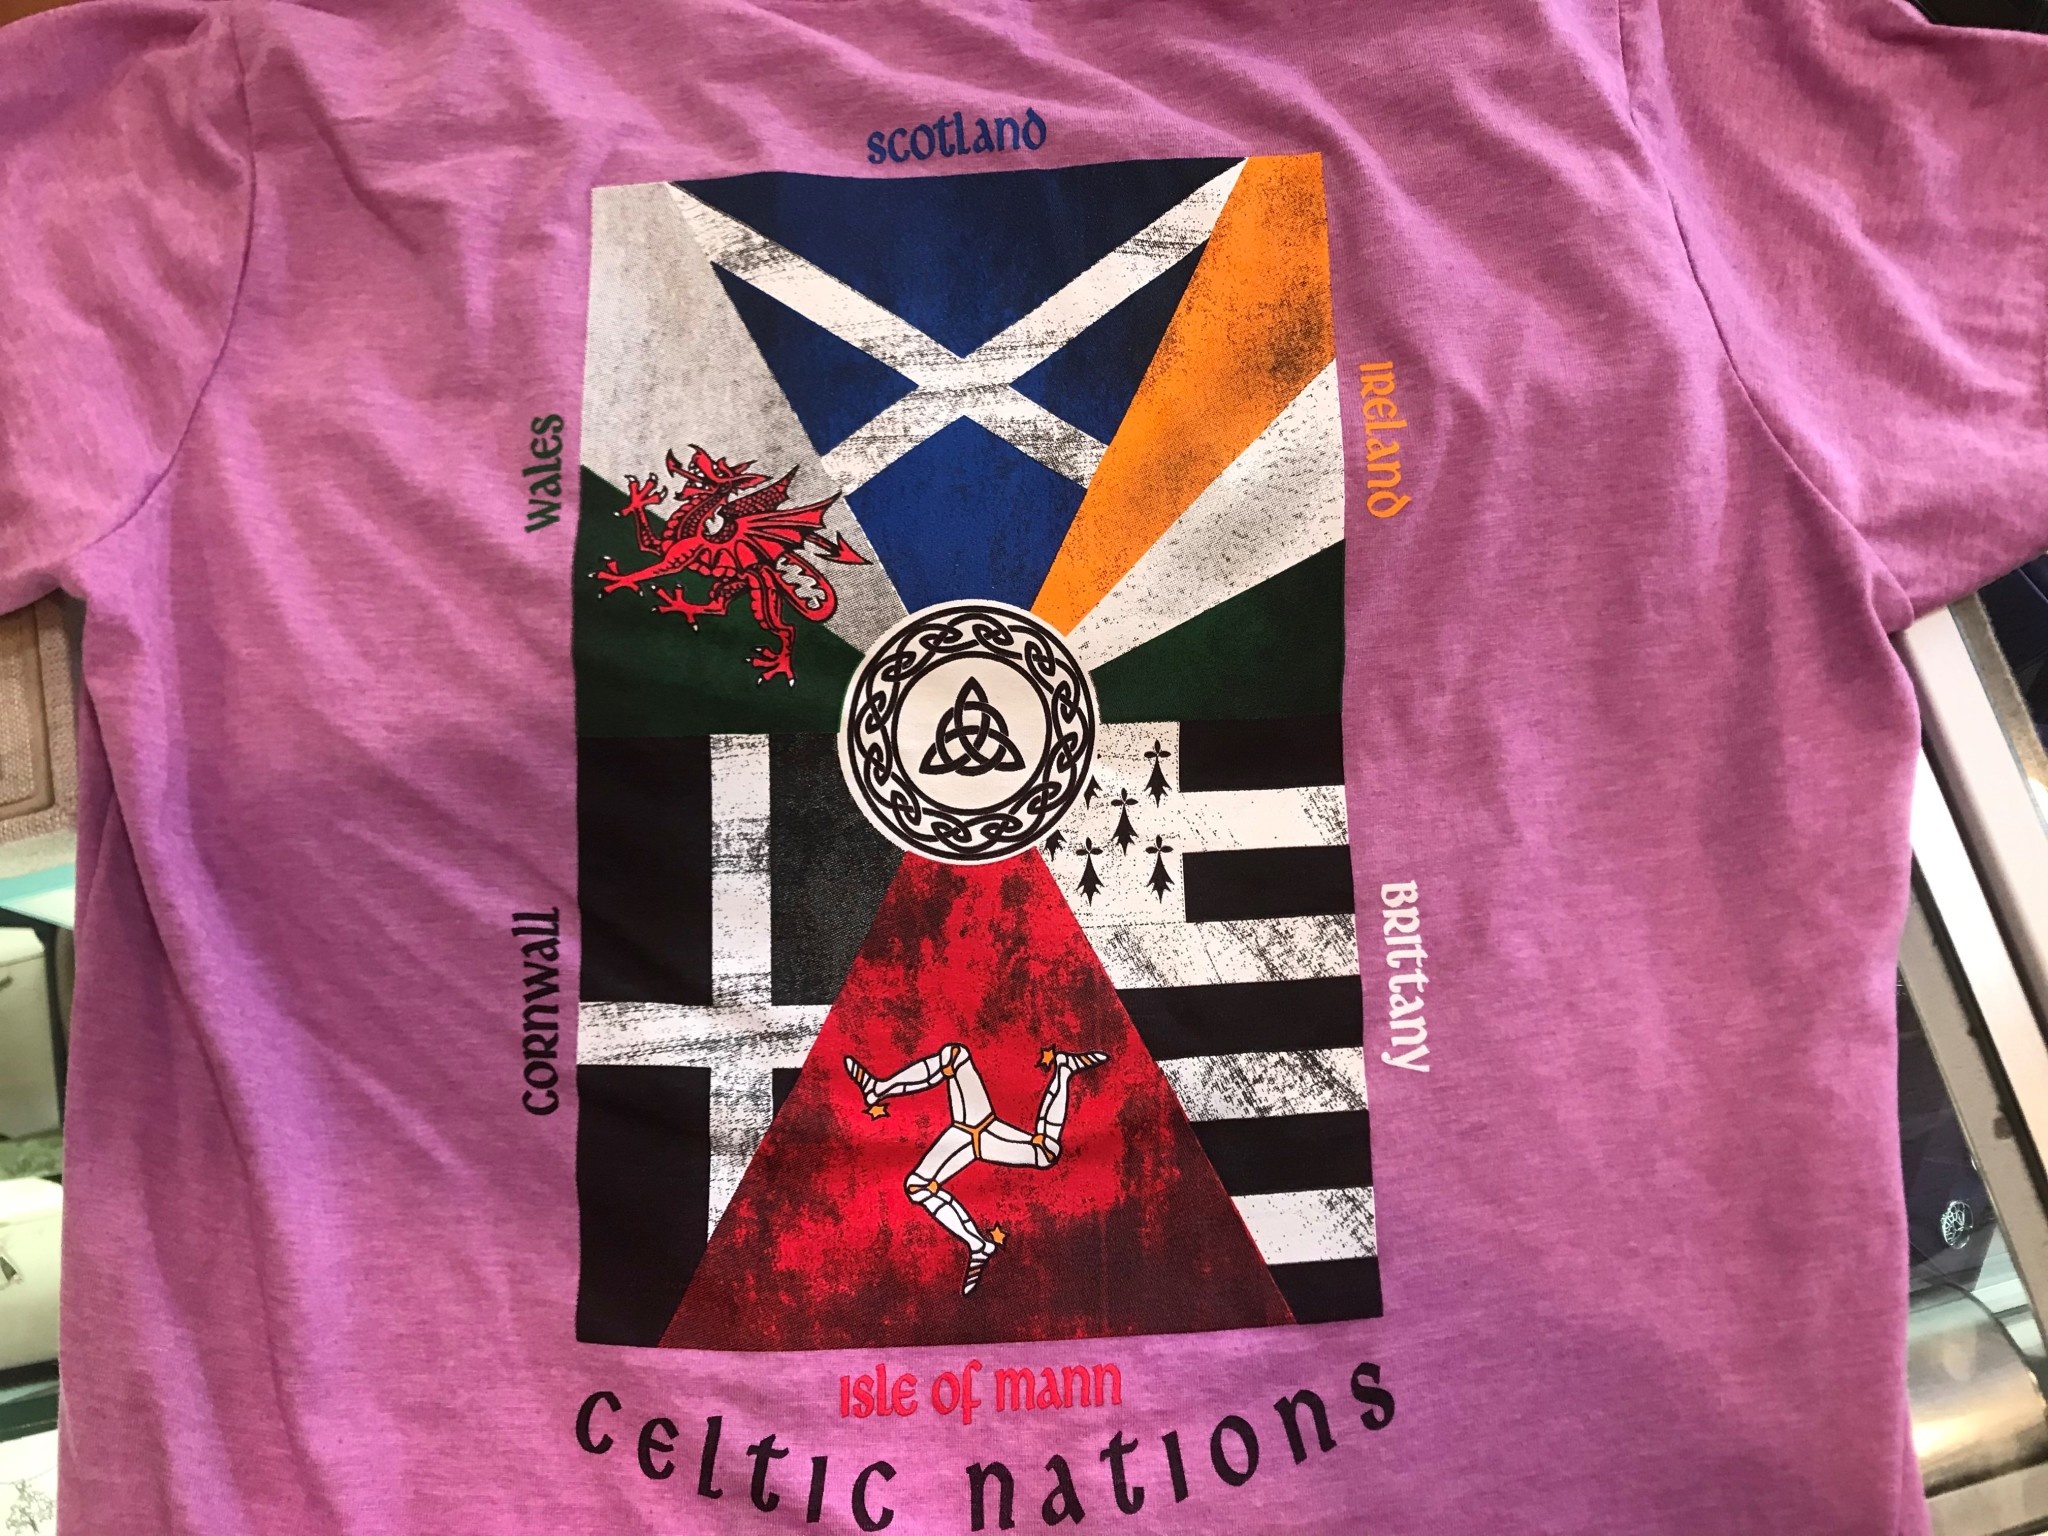 Shirt: Wm Celt Nations